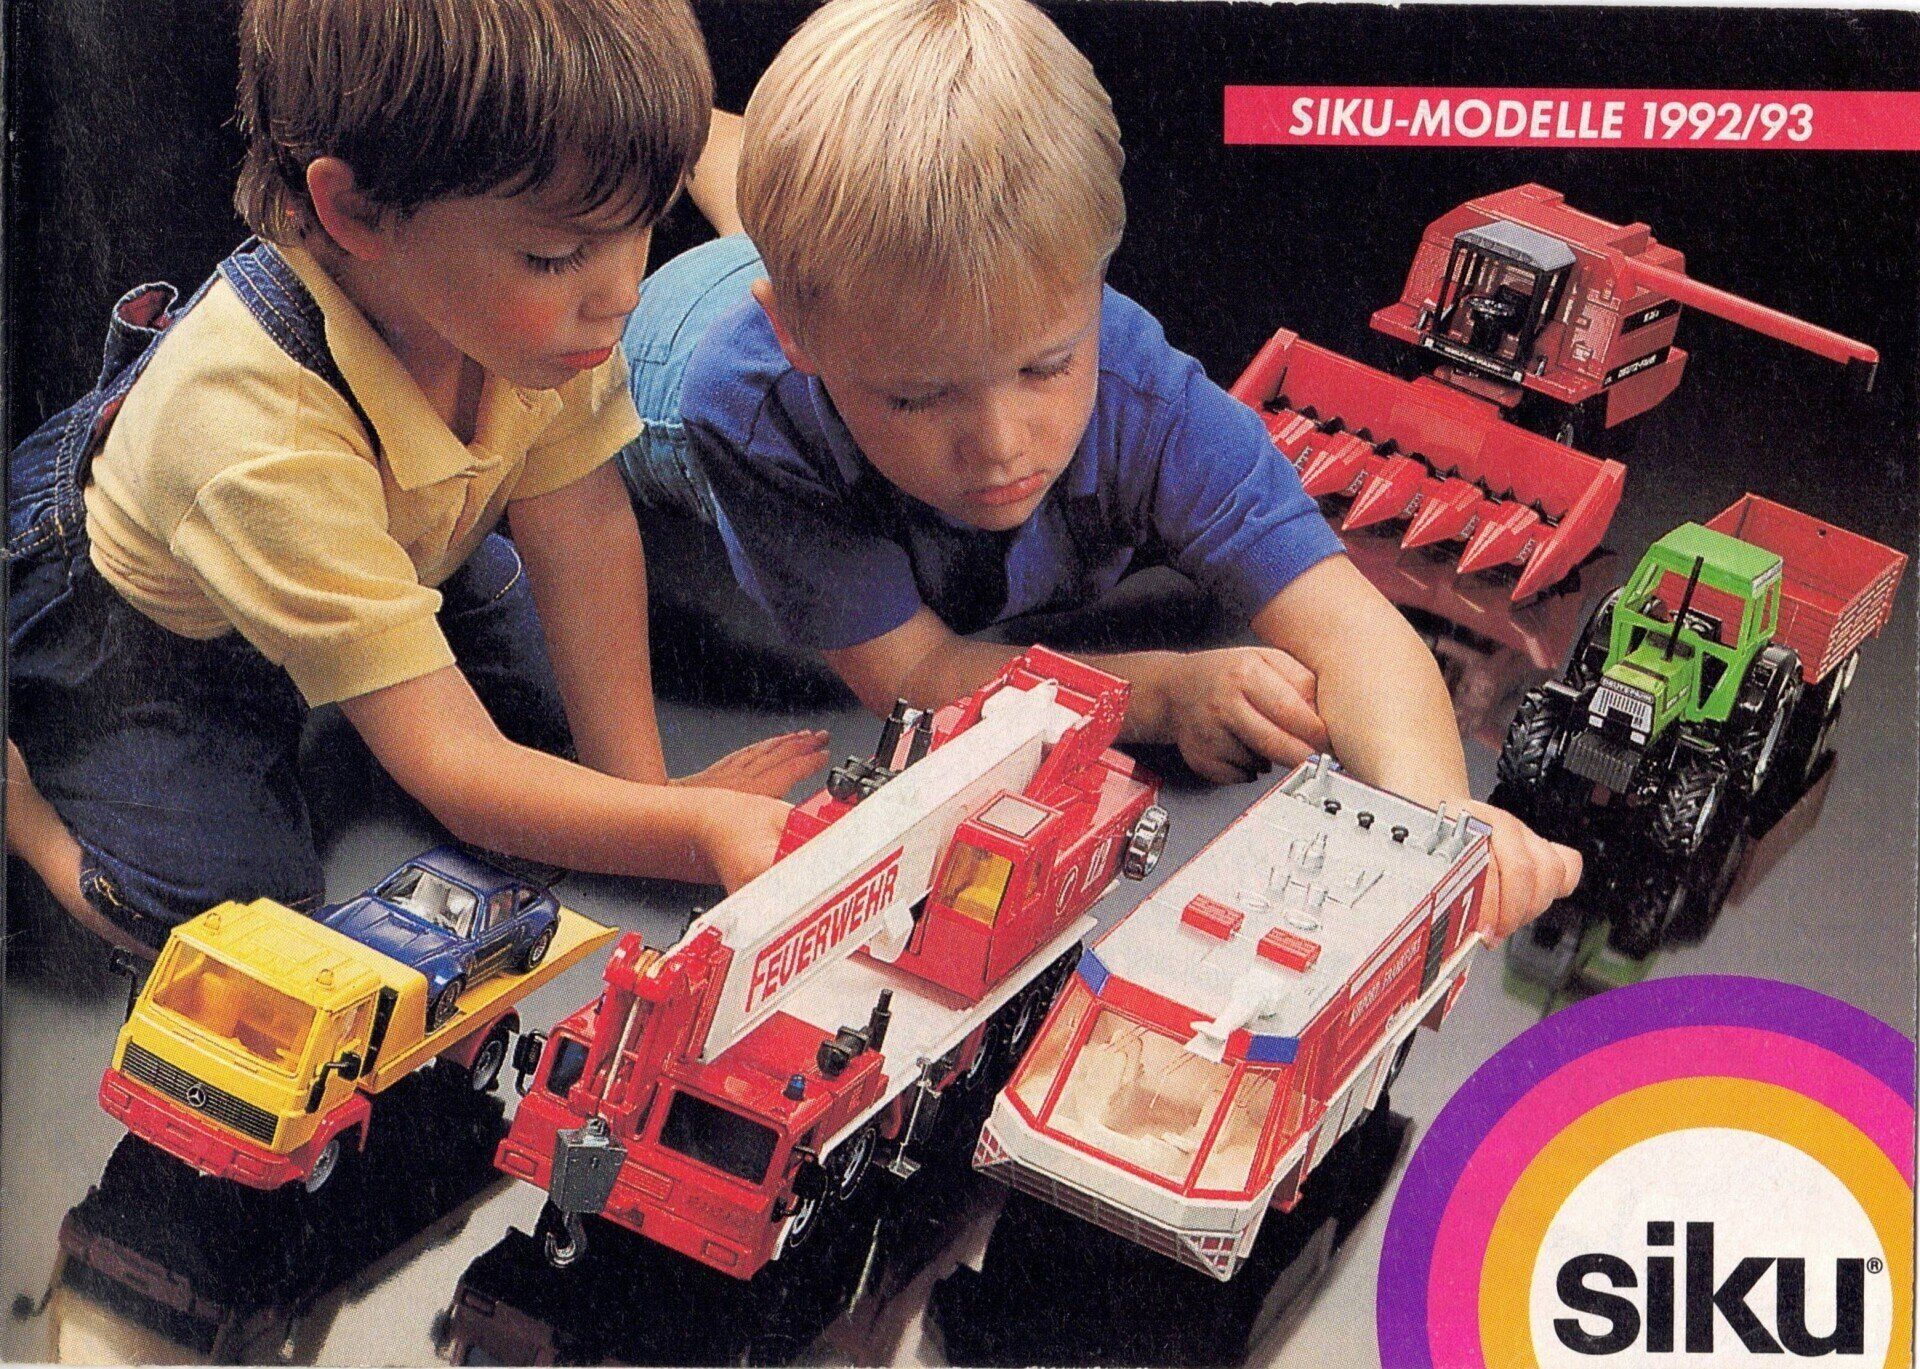 Siku catalogue 1992-93